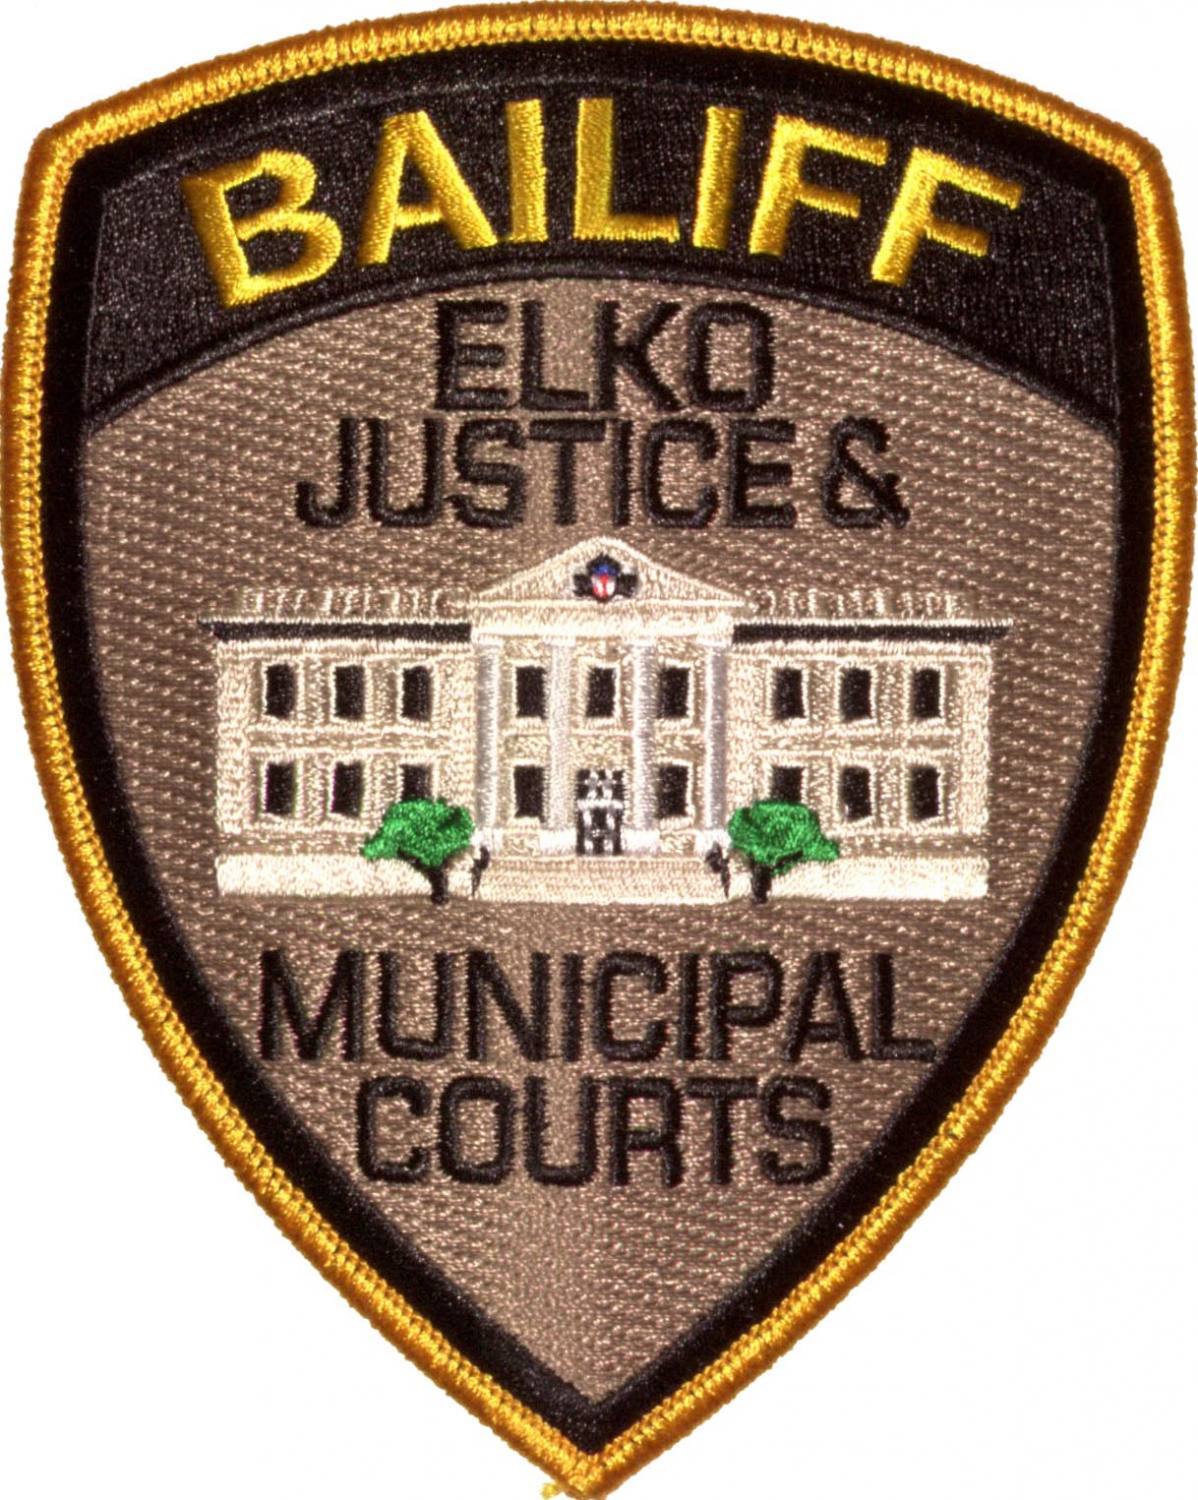 Justice System Emblems